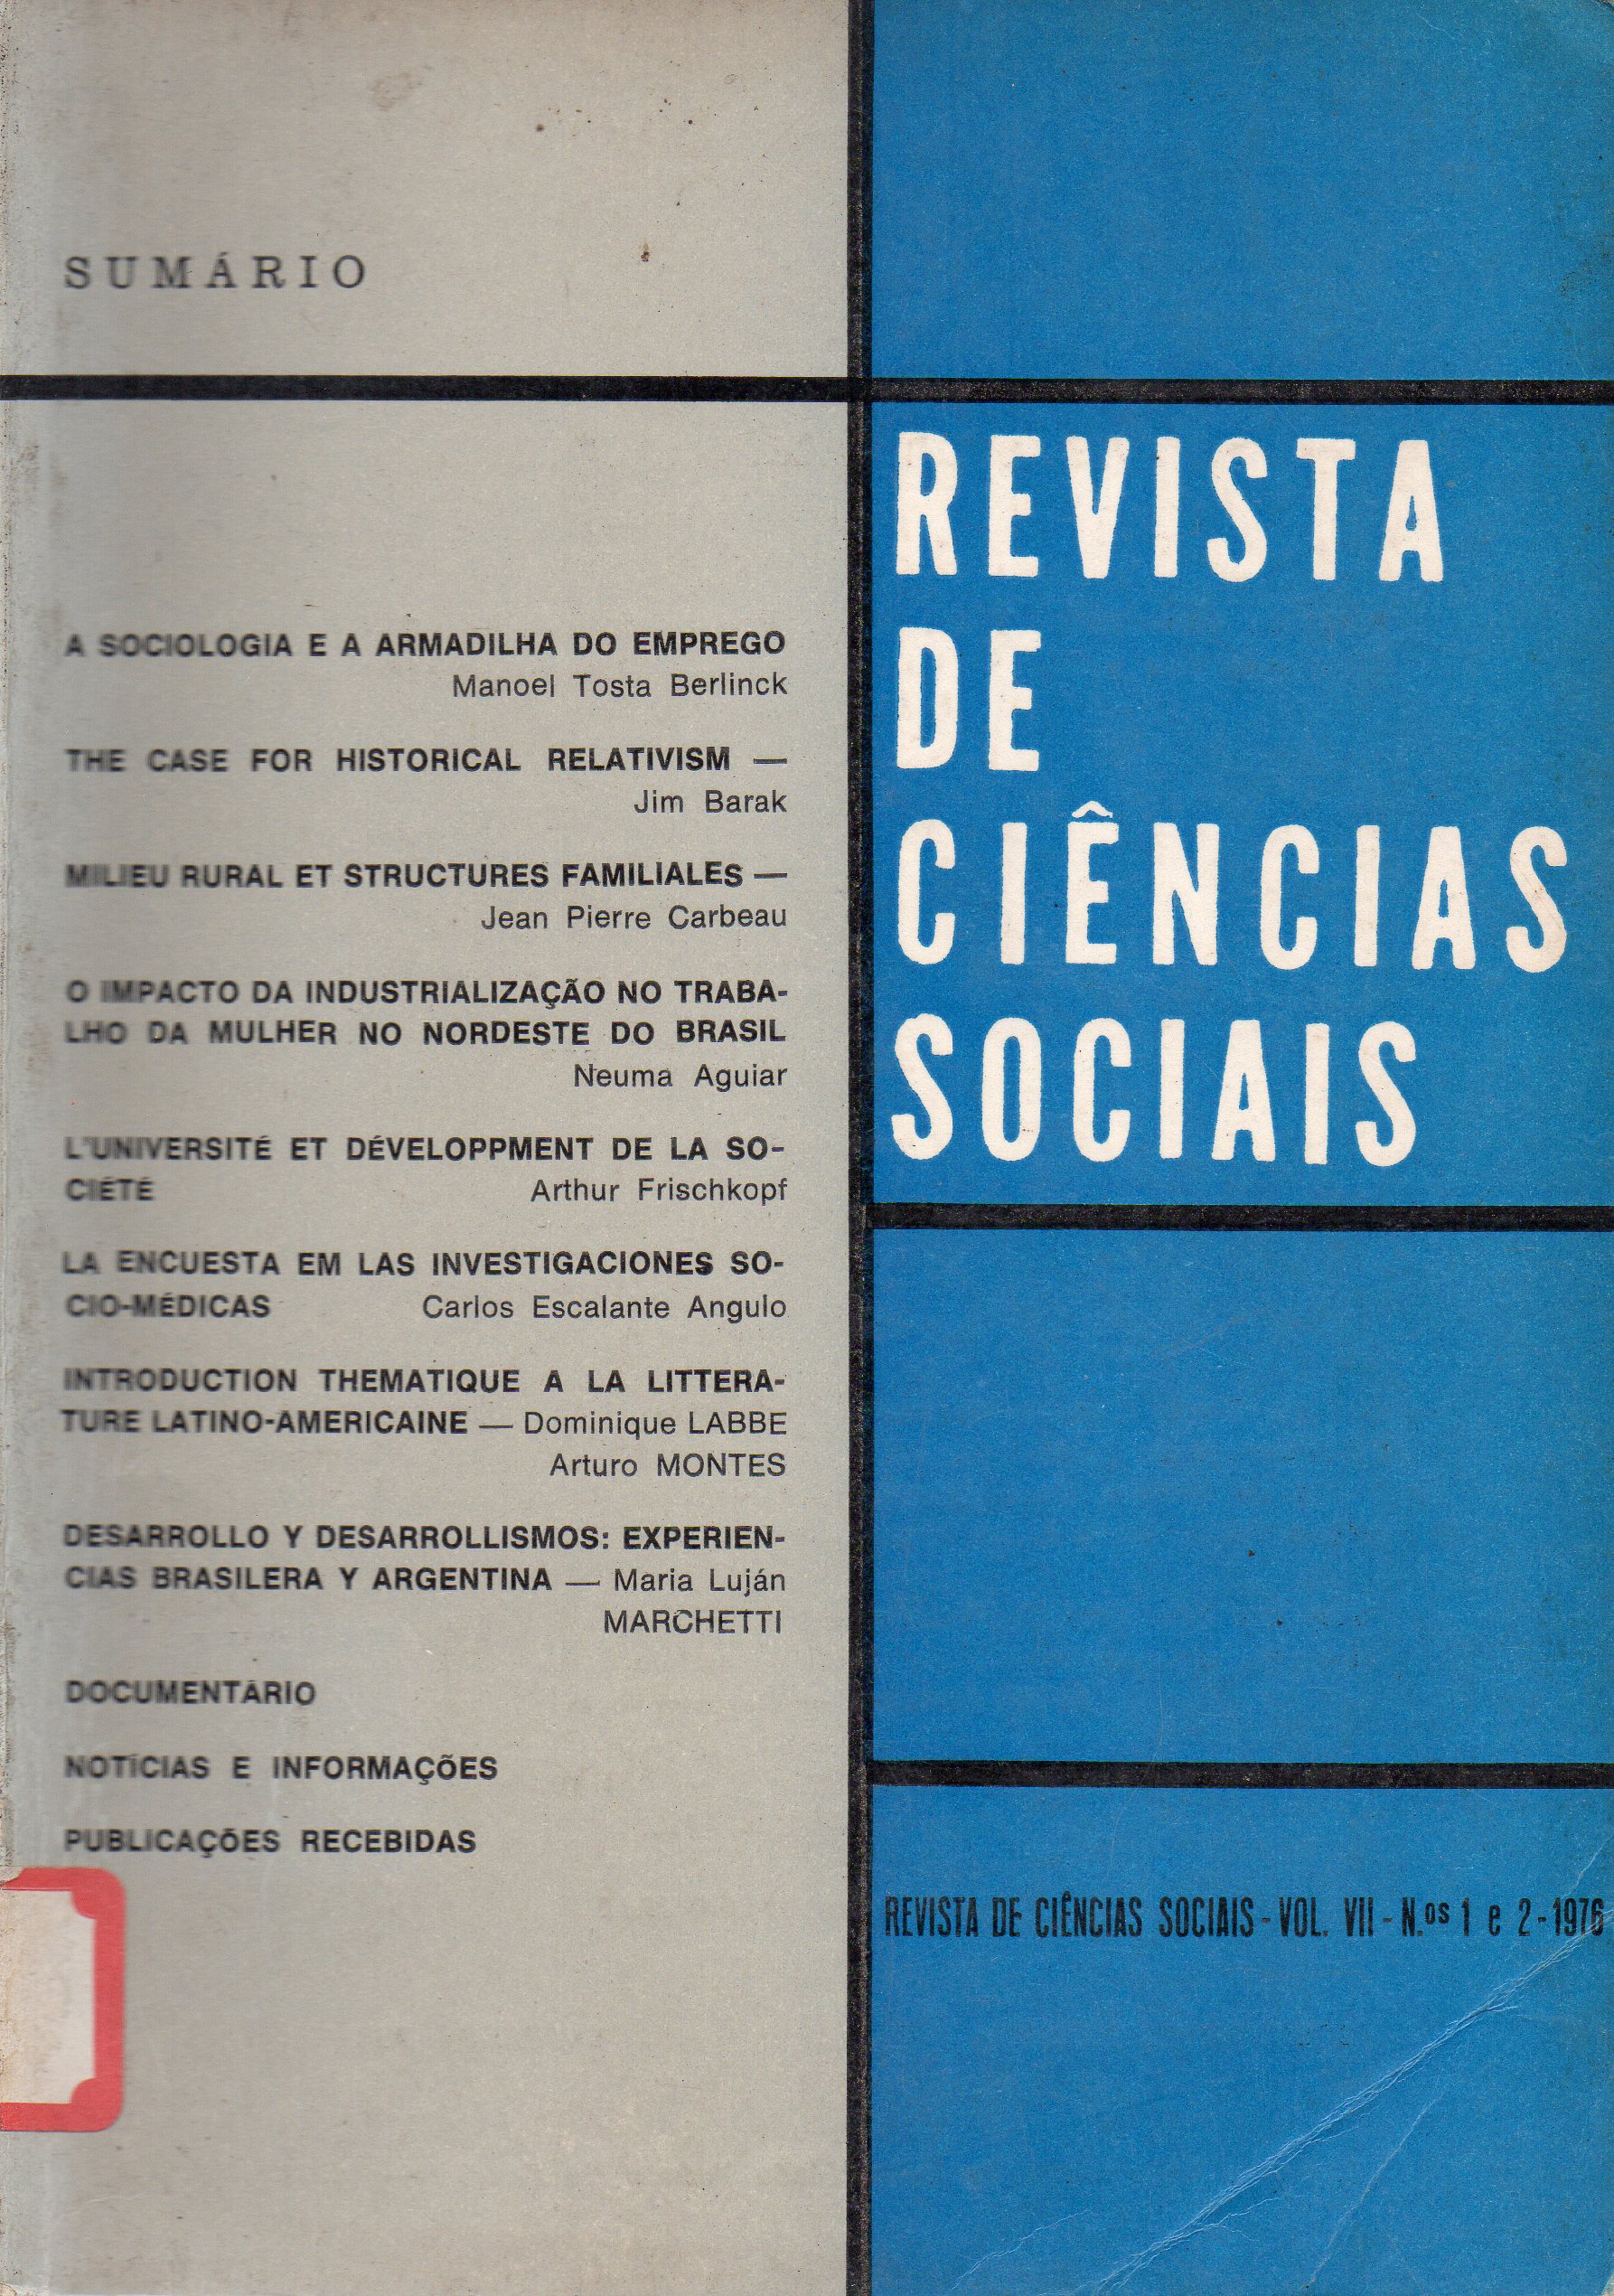 					Ver Vol. 7 Núm. 1 e 2 (1976): Revista de Ciências Sociais
				